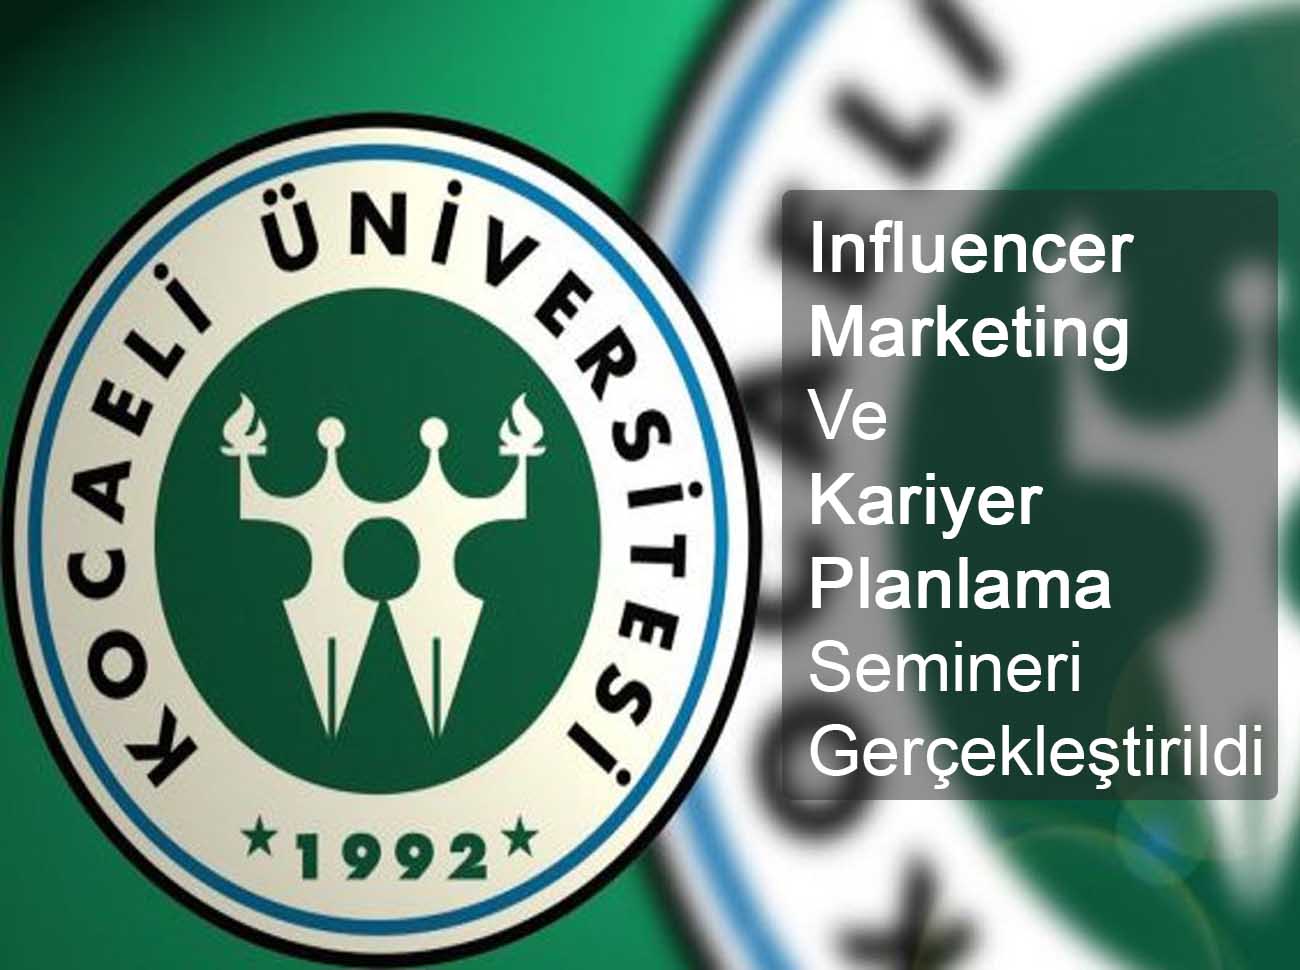 Influencer Marketing Ve Kariyer Planlama Semineri Gerçekleştirildi